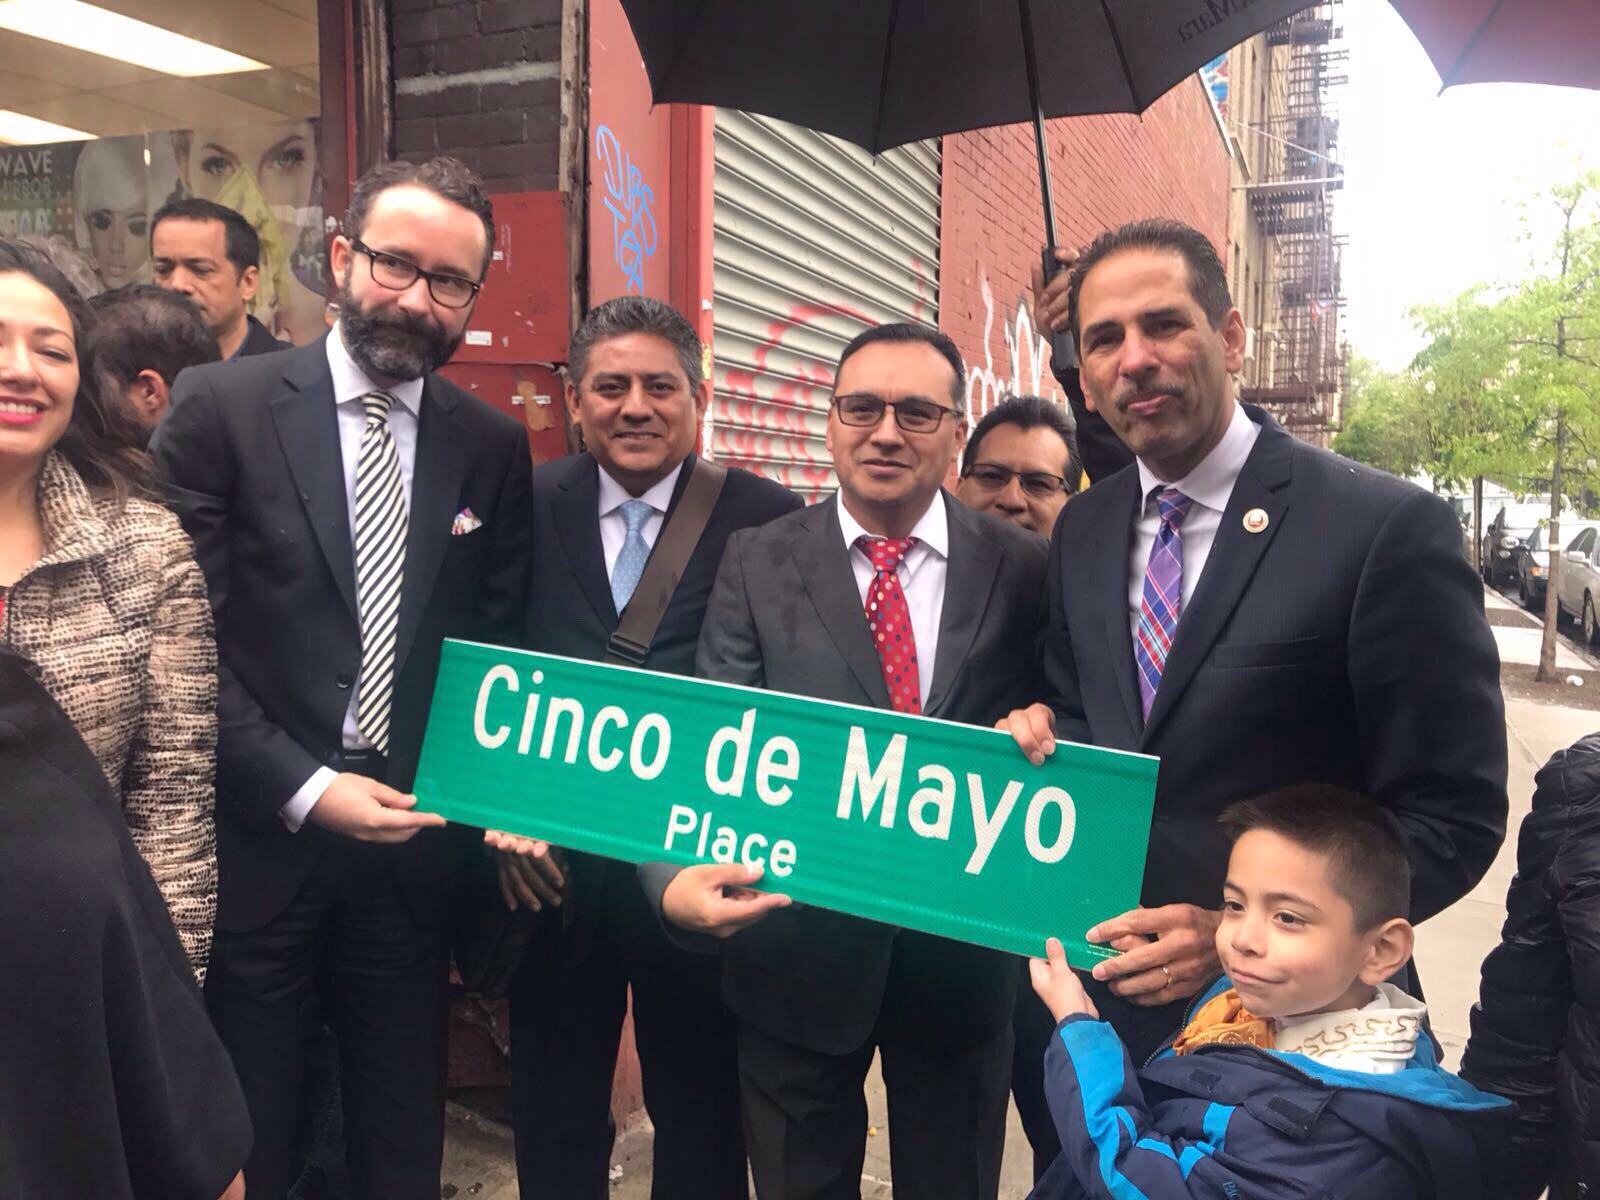 Nombran Cinco de Mayo a calle del Bronx en ciudad de Nueva York